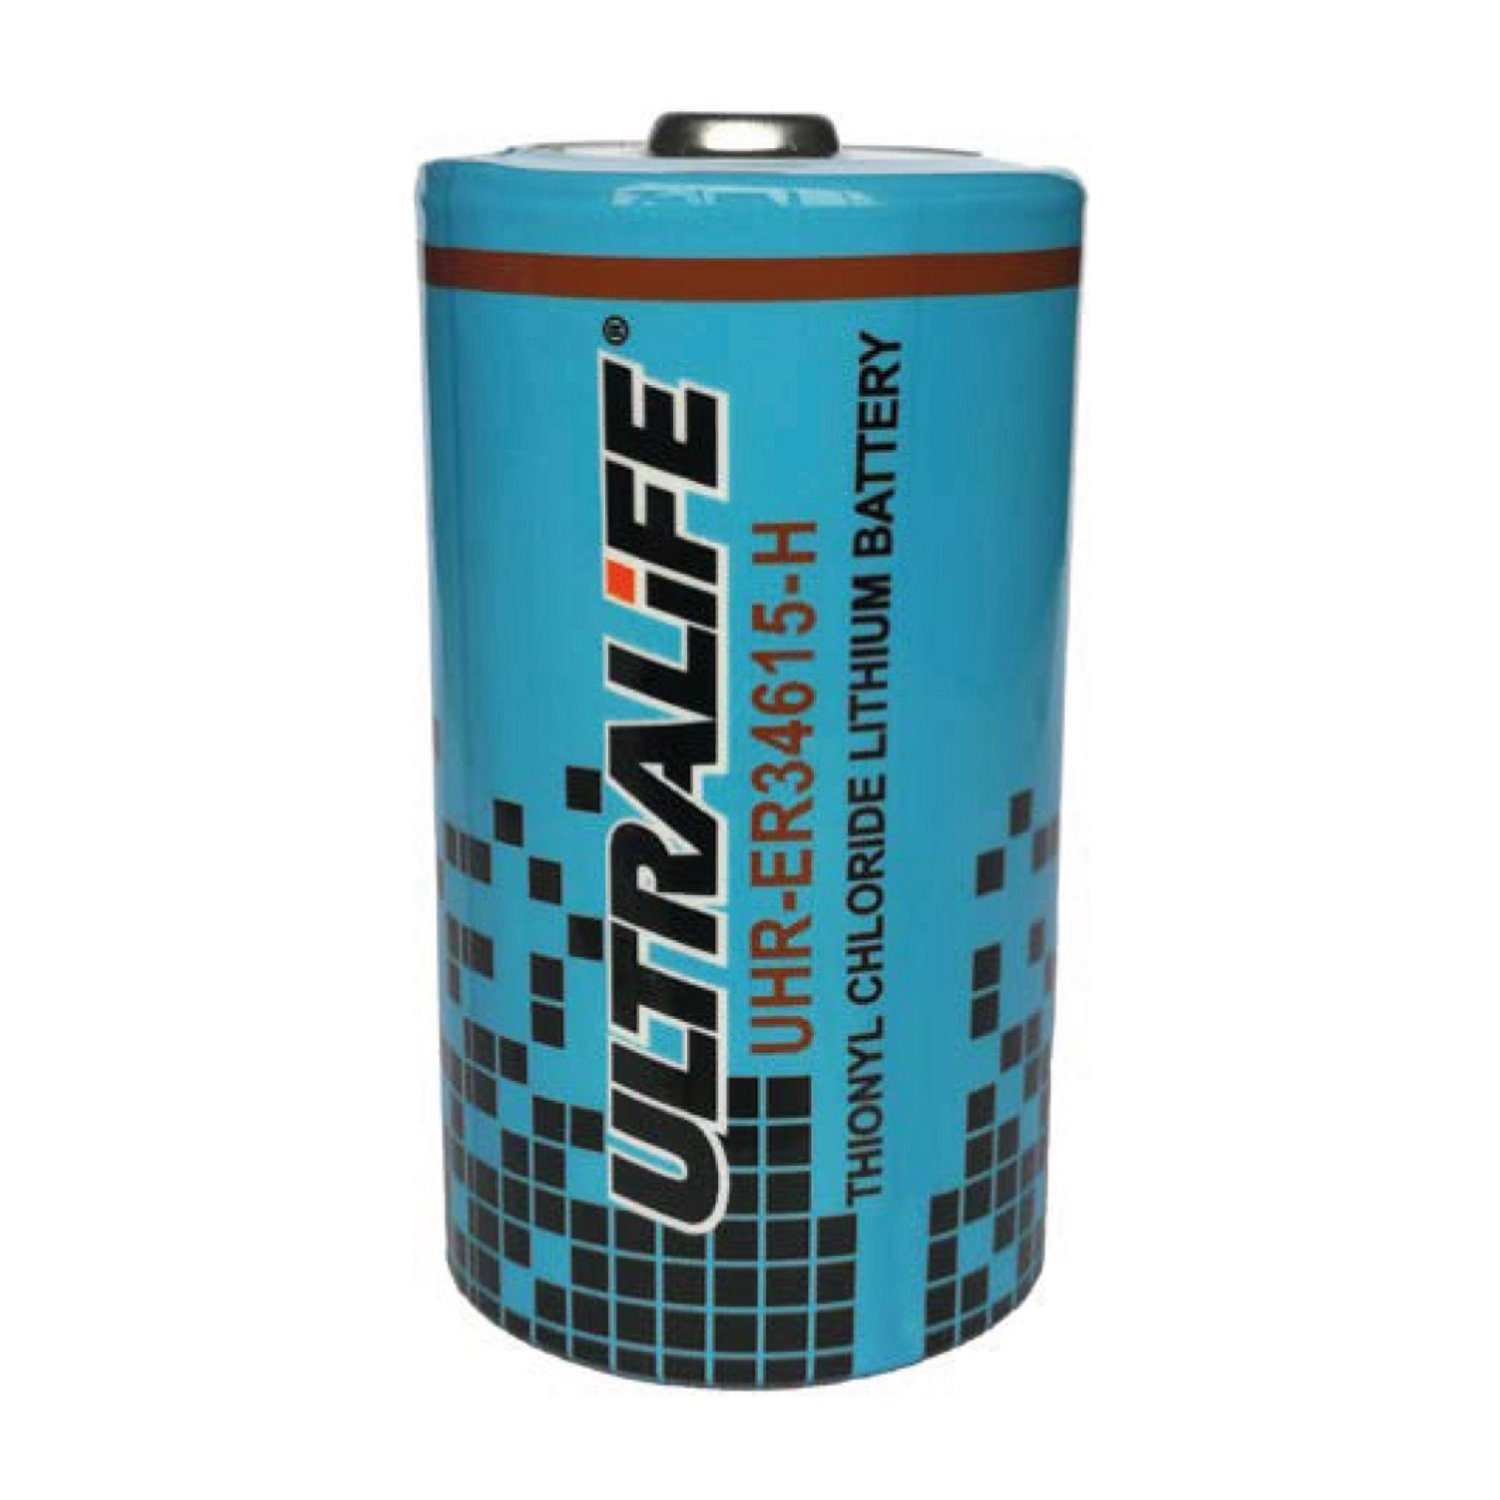 Ultralife 3,6 Lithium 14,5 Hoc UHR-ER34615-H Batterie UltraLife Zelle Ah Volt D Batterie